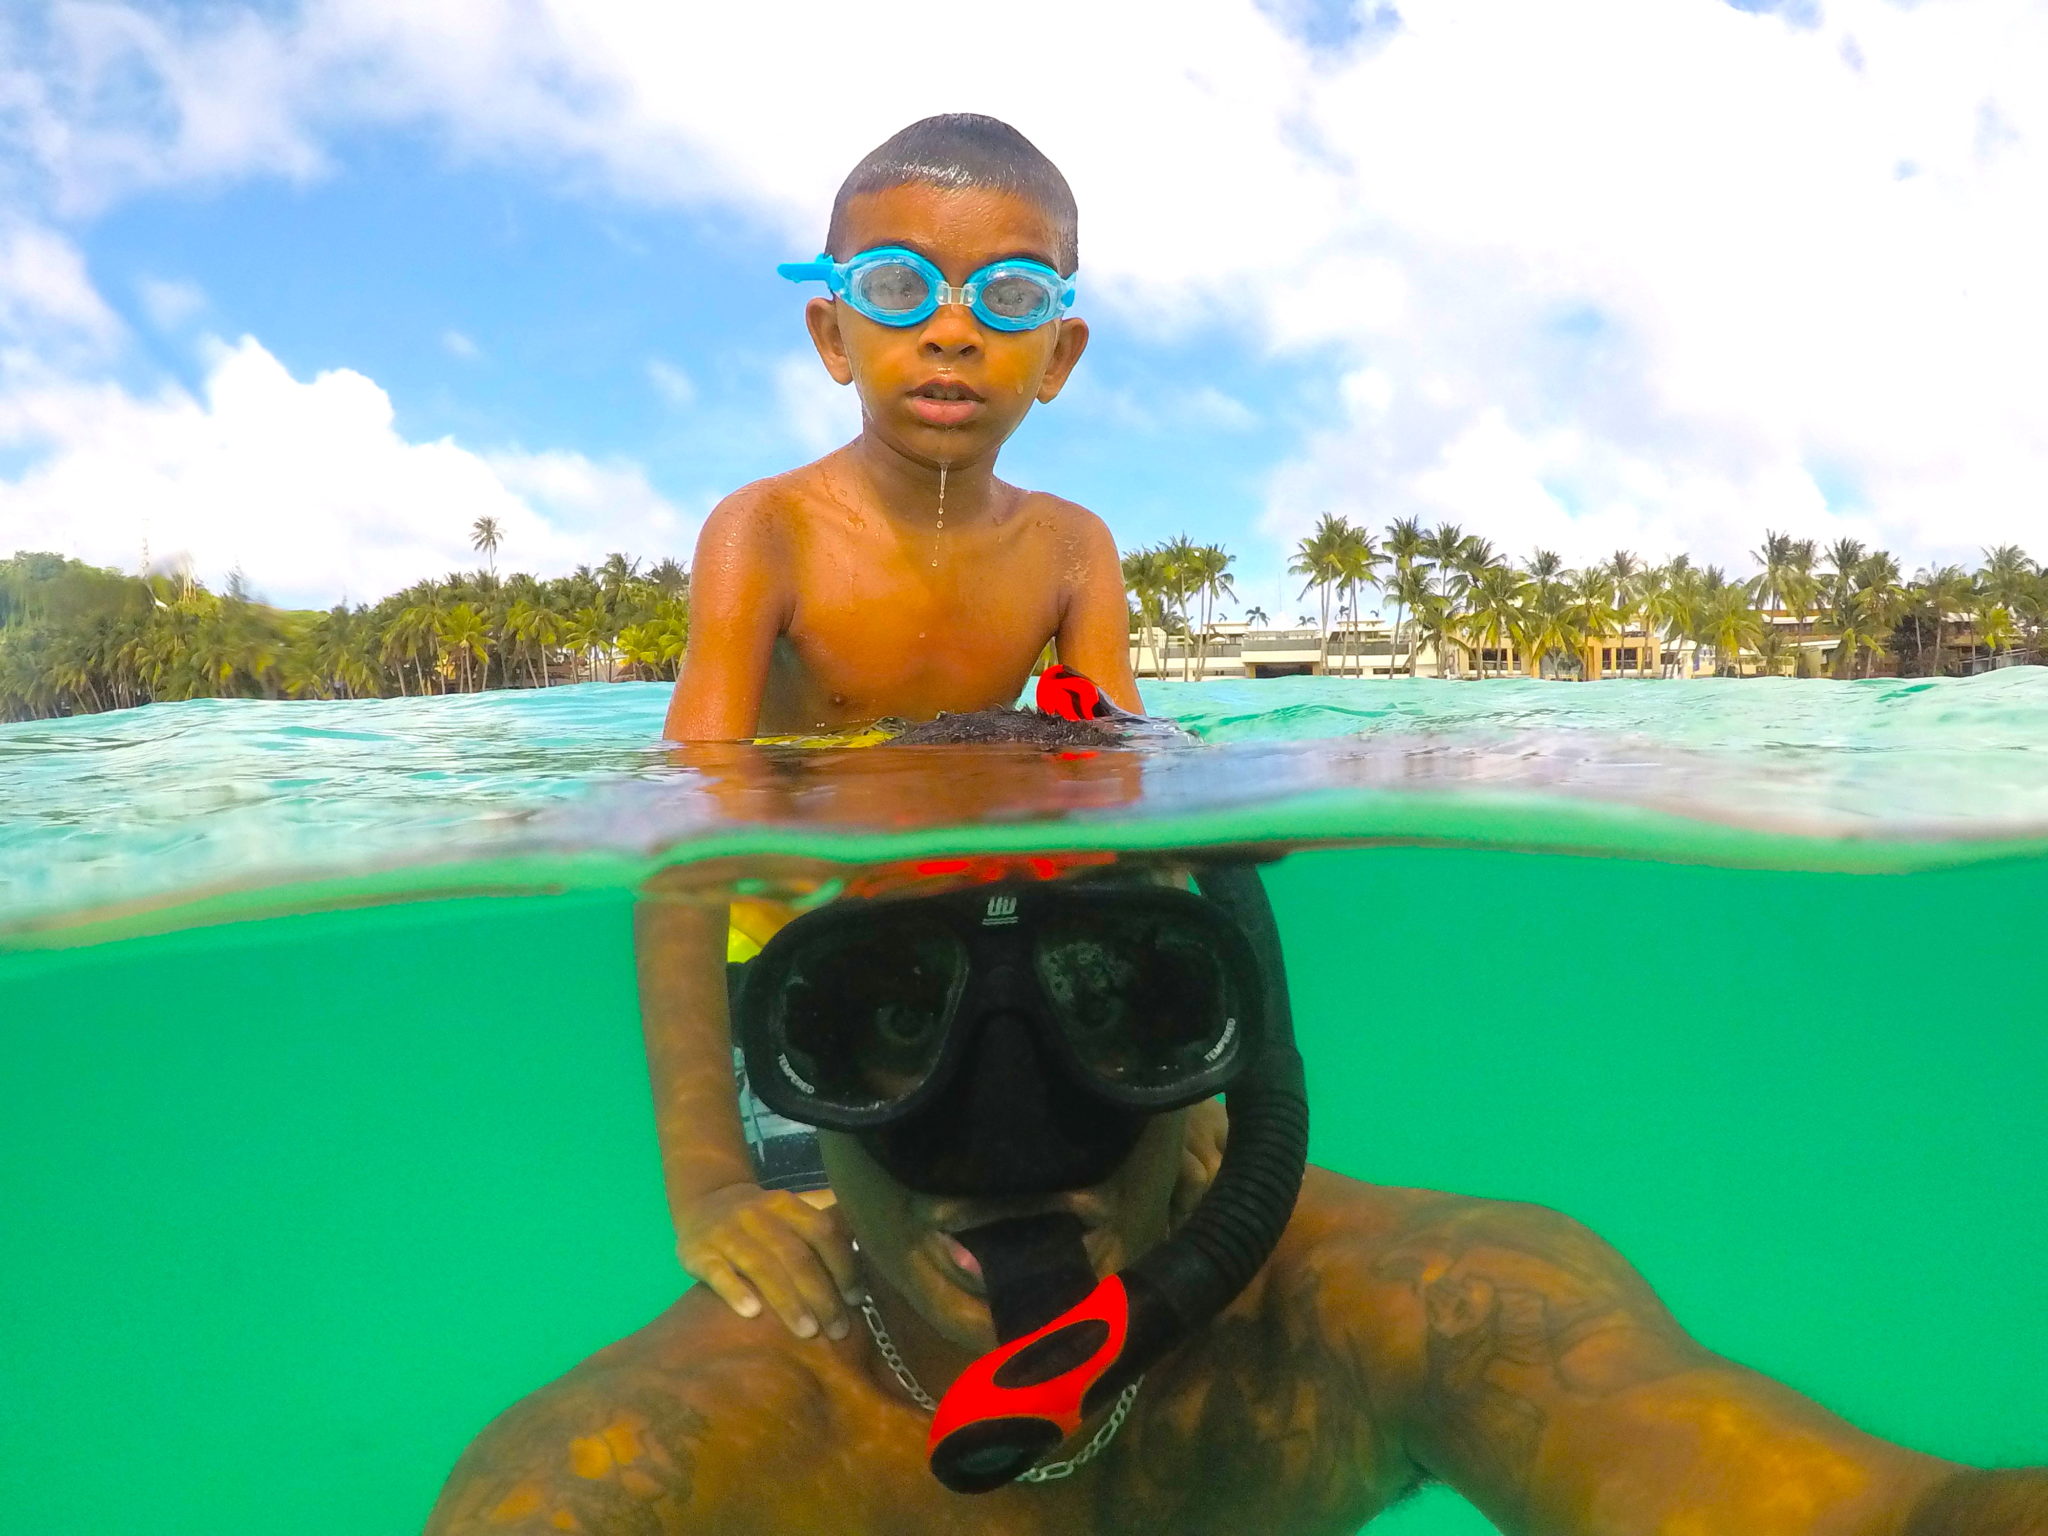 is snorkelling dangerous?